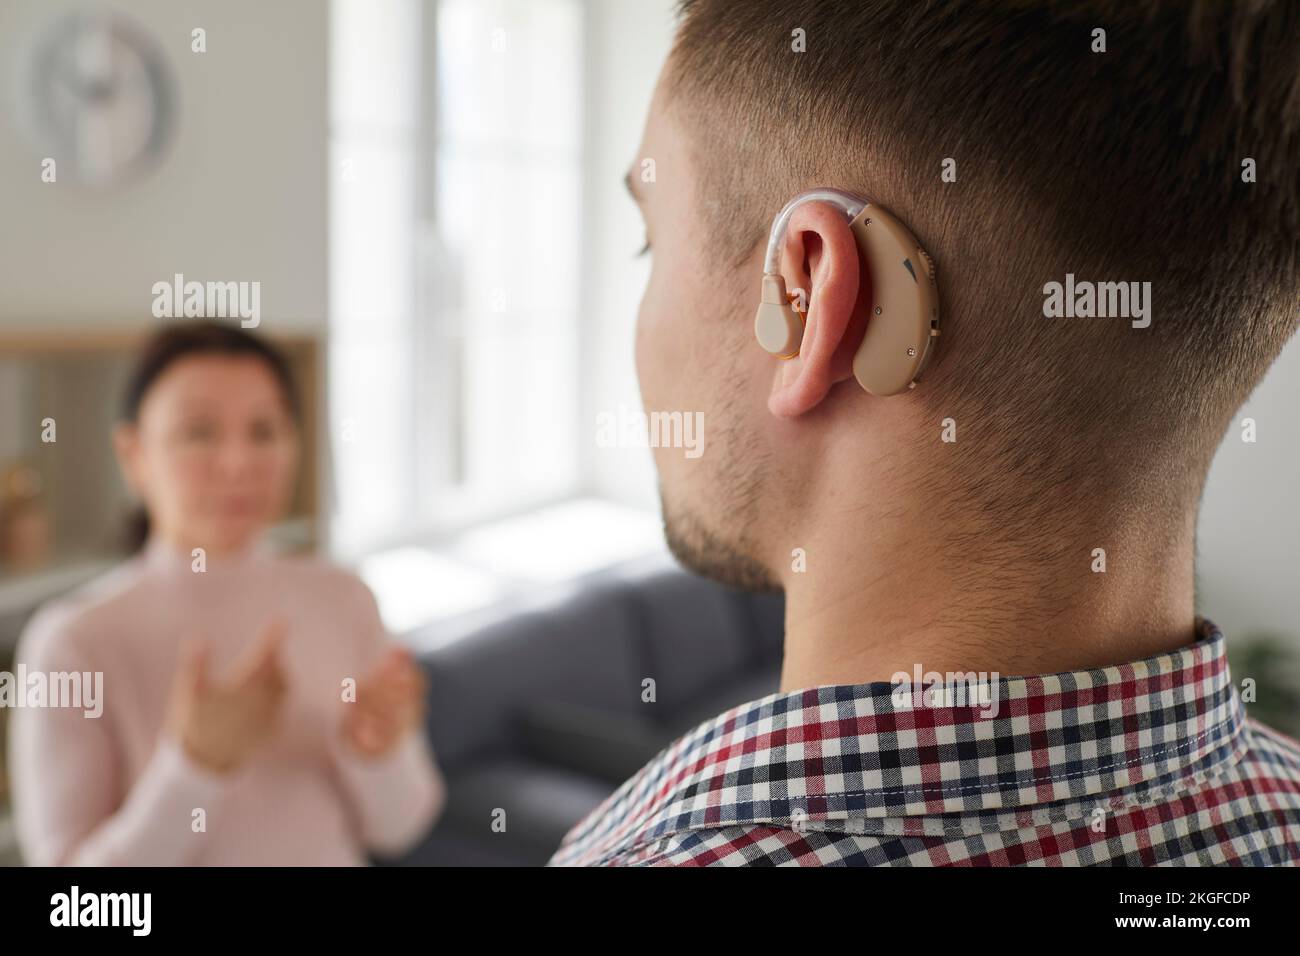 Tauber junger Mann, der ein Hörgerät am Ohr trägt und mit anderen Menschen kommuniziert Stockfoto